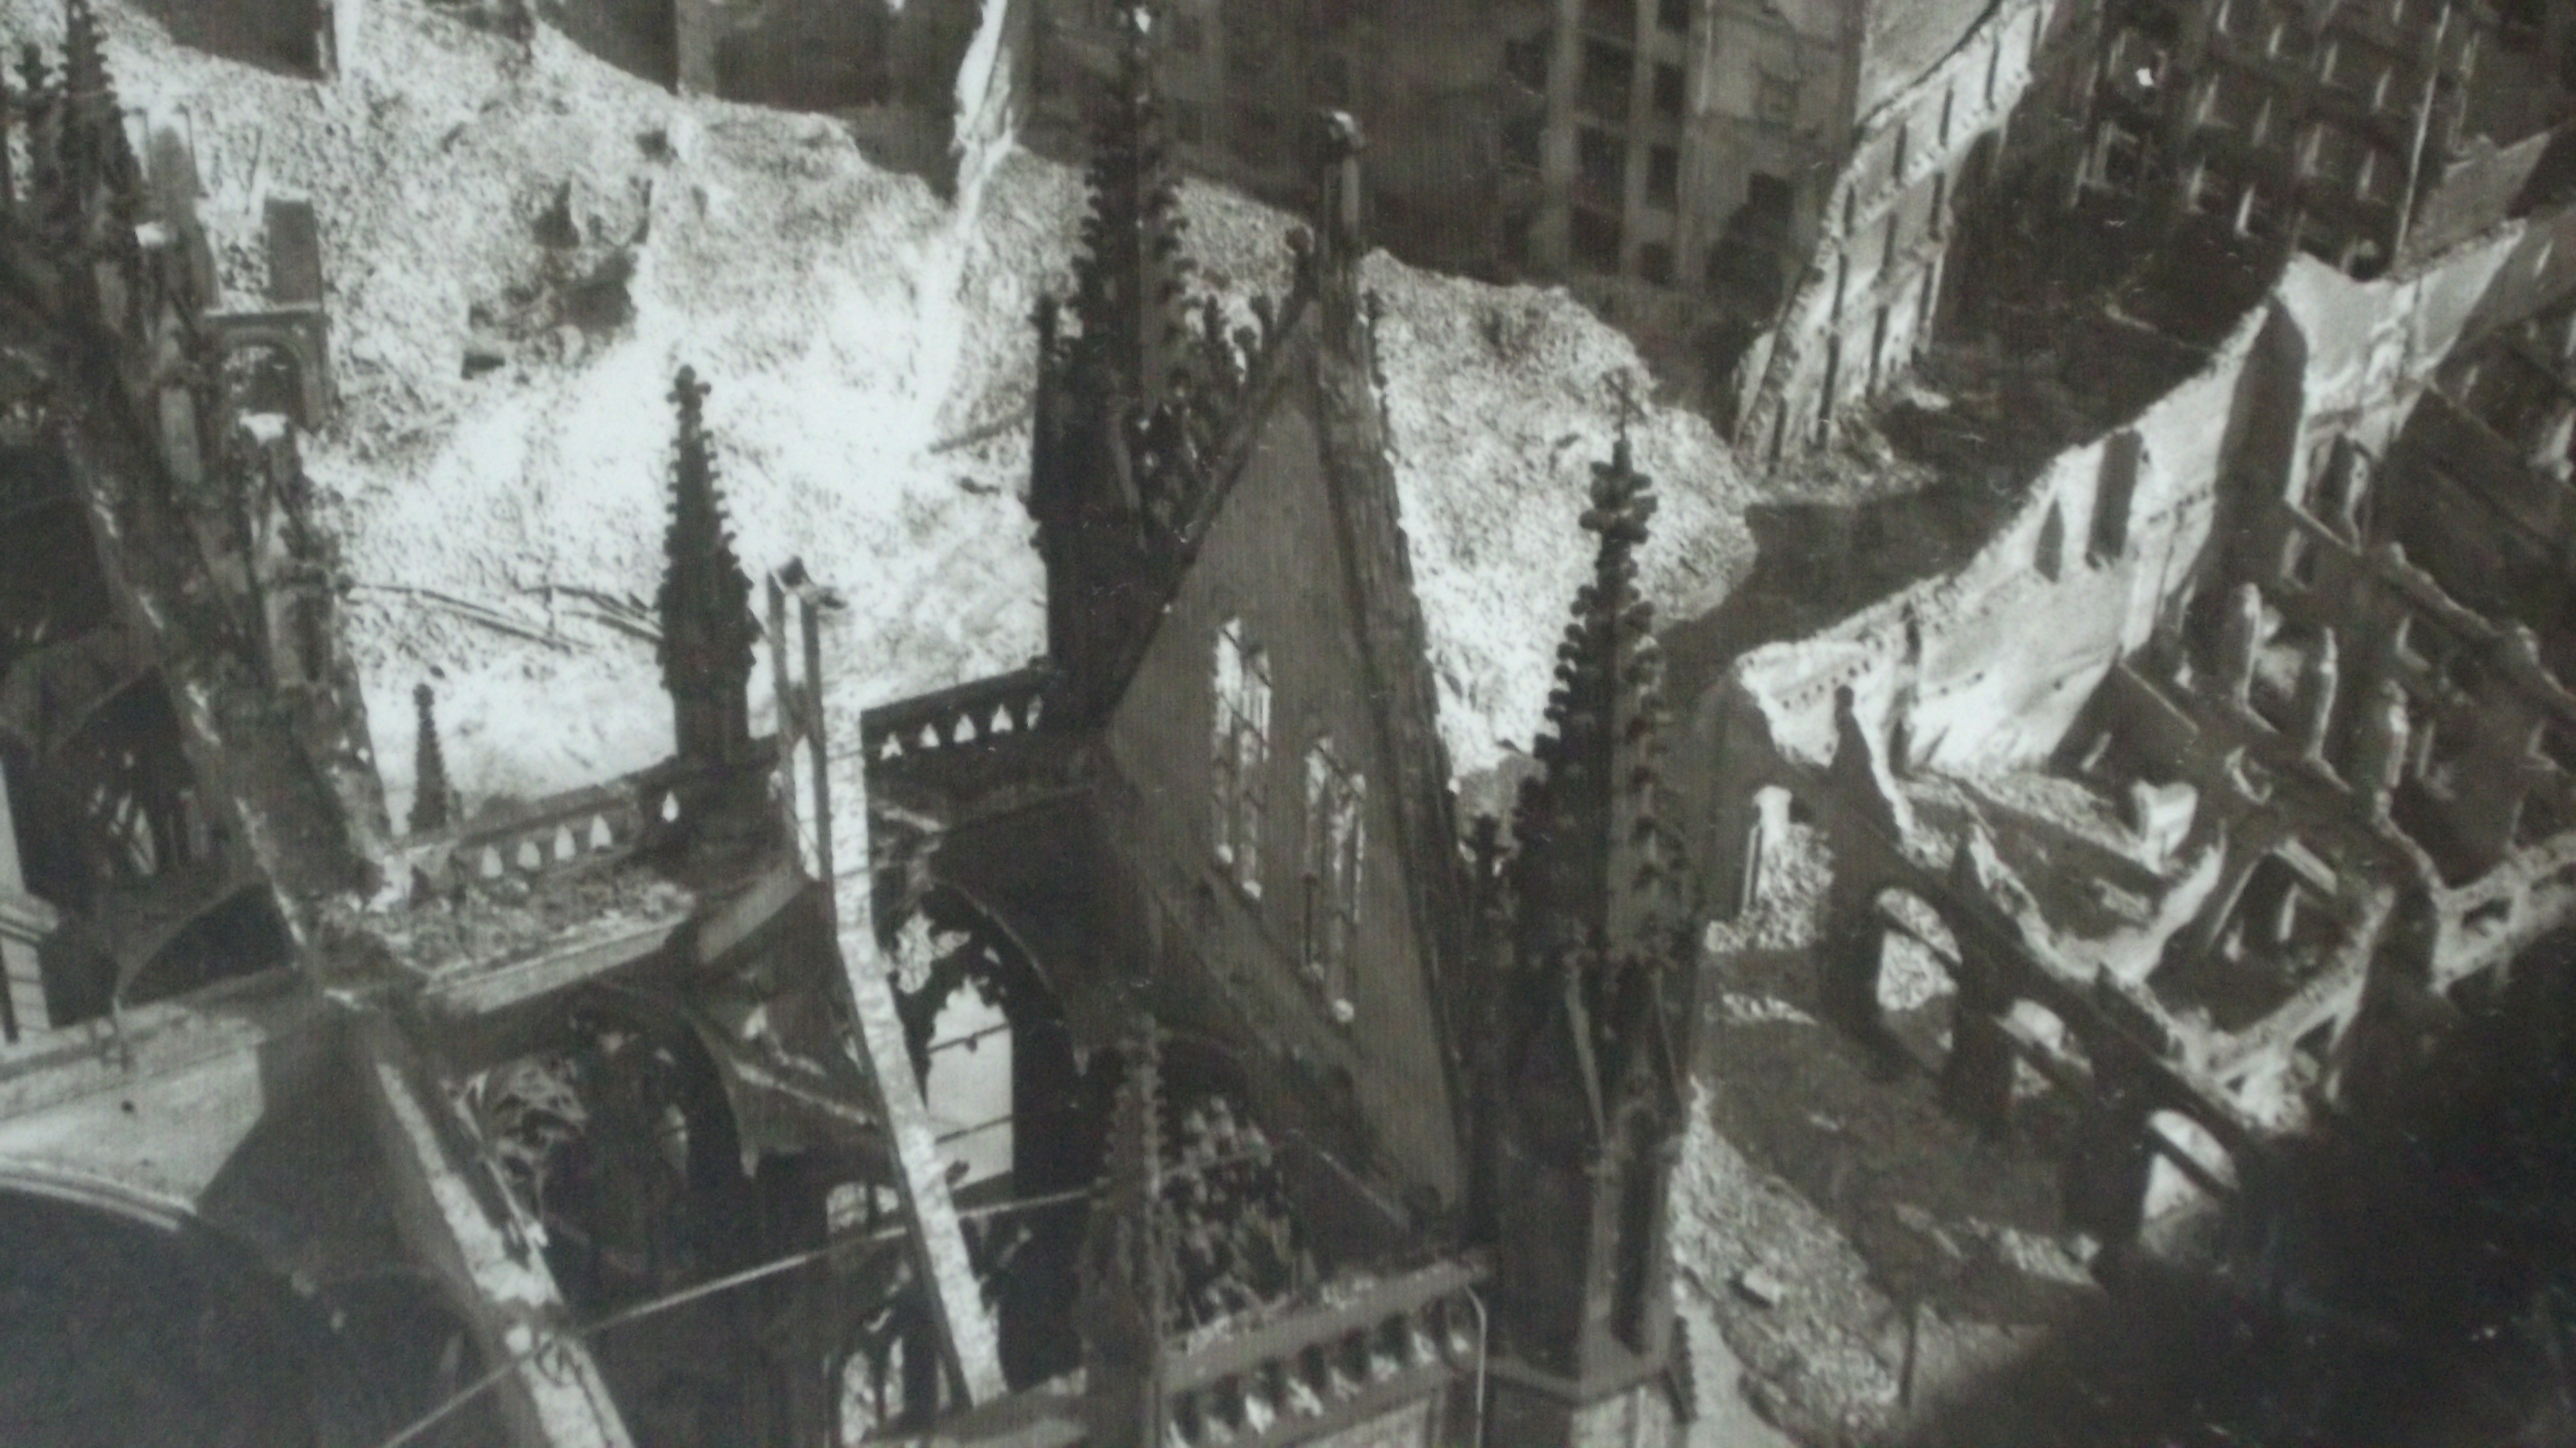 Nikolaikirche nach dem Krieg als Ruine